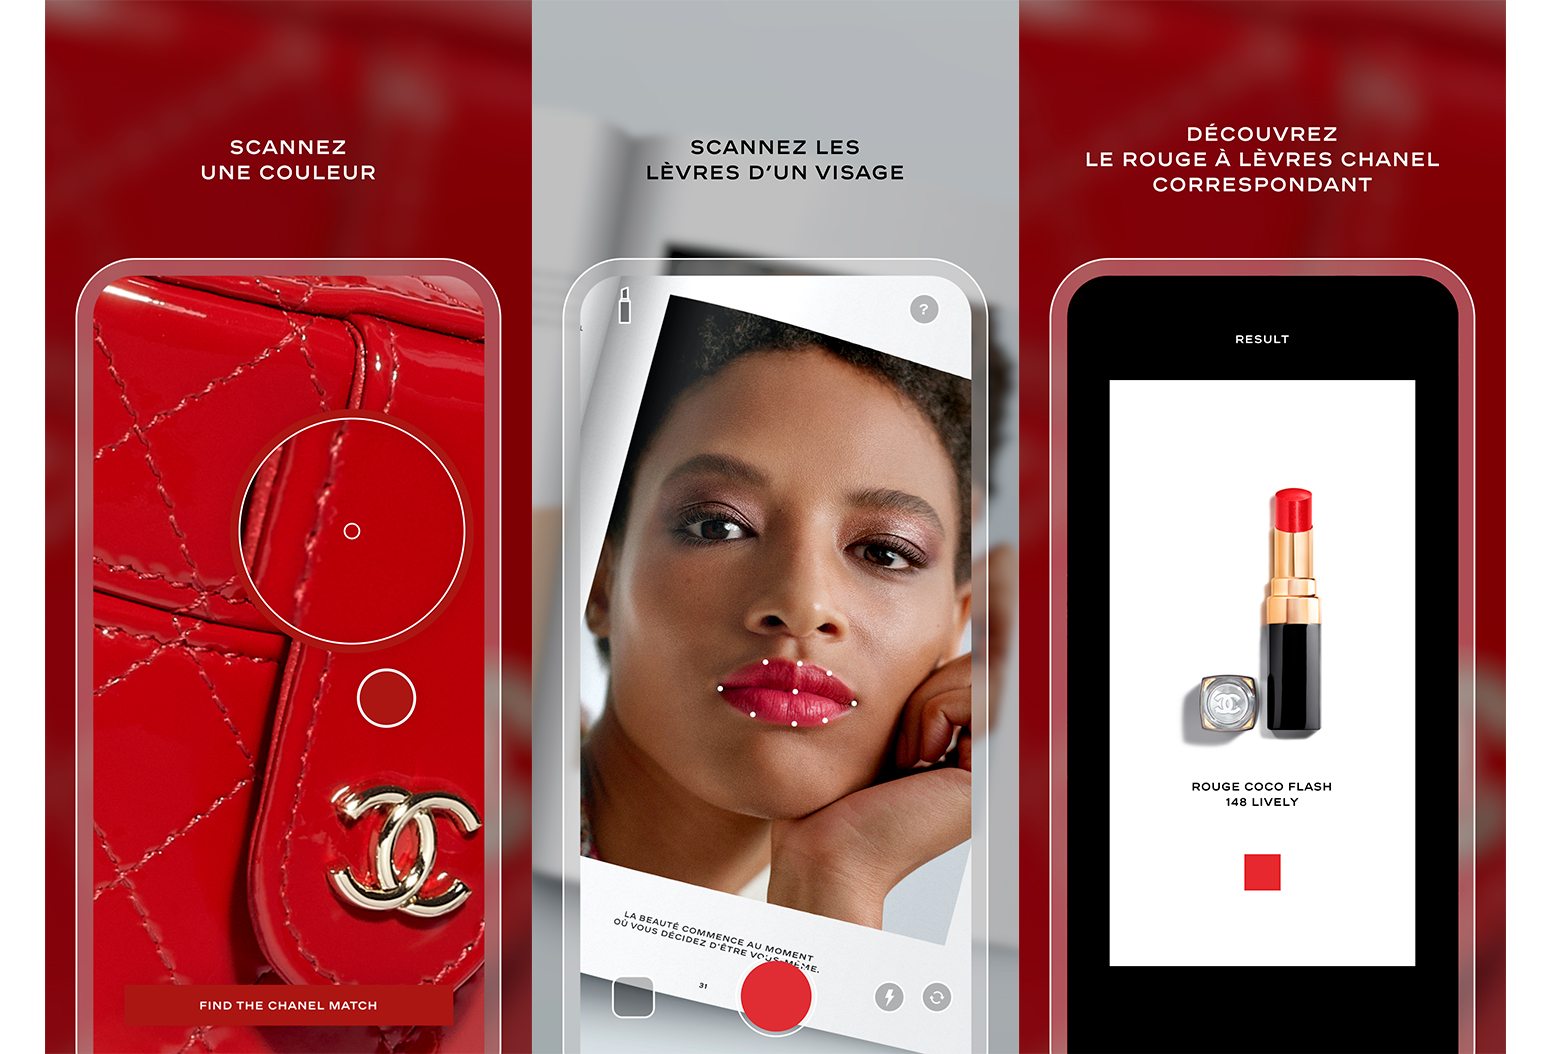 Chanel imagine Lipscanner, une application de maquillage pour les lèvres, le “Shazam” de la couleur